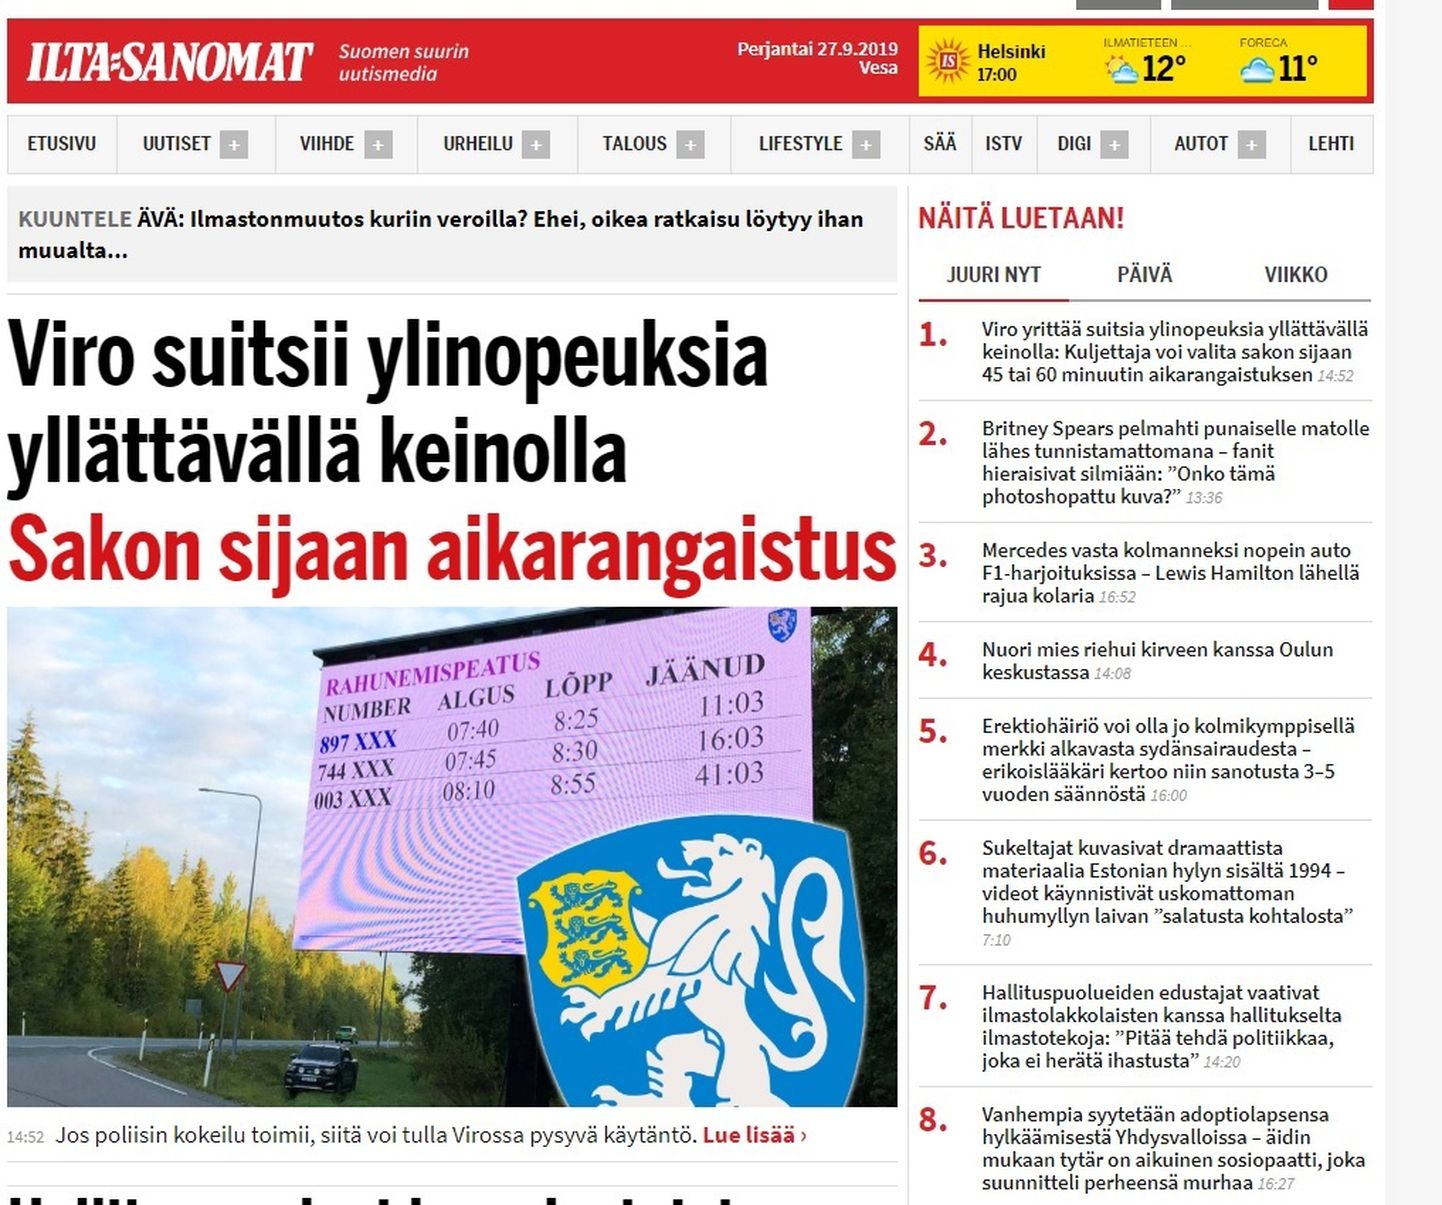 Ilta-Sanomati veebilehe esiuudiseks on Eesti politsei poolt katsetatav rahunemispeatus.